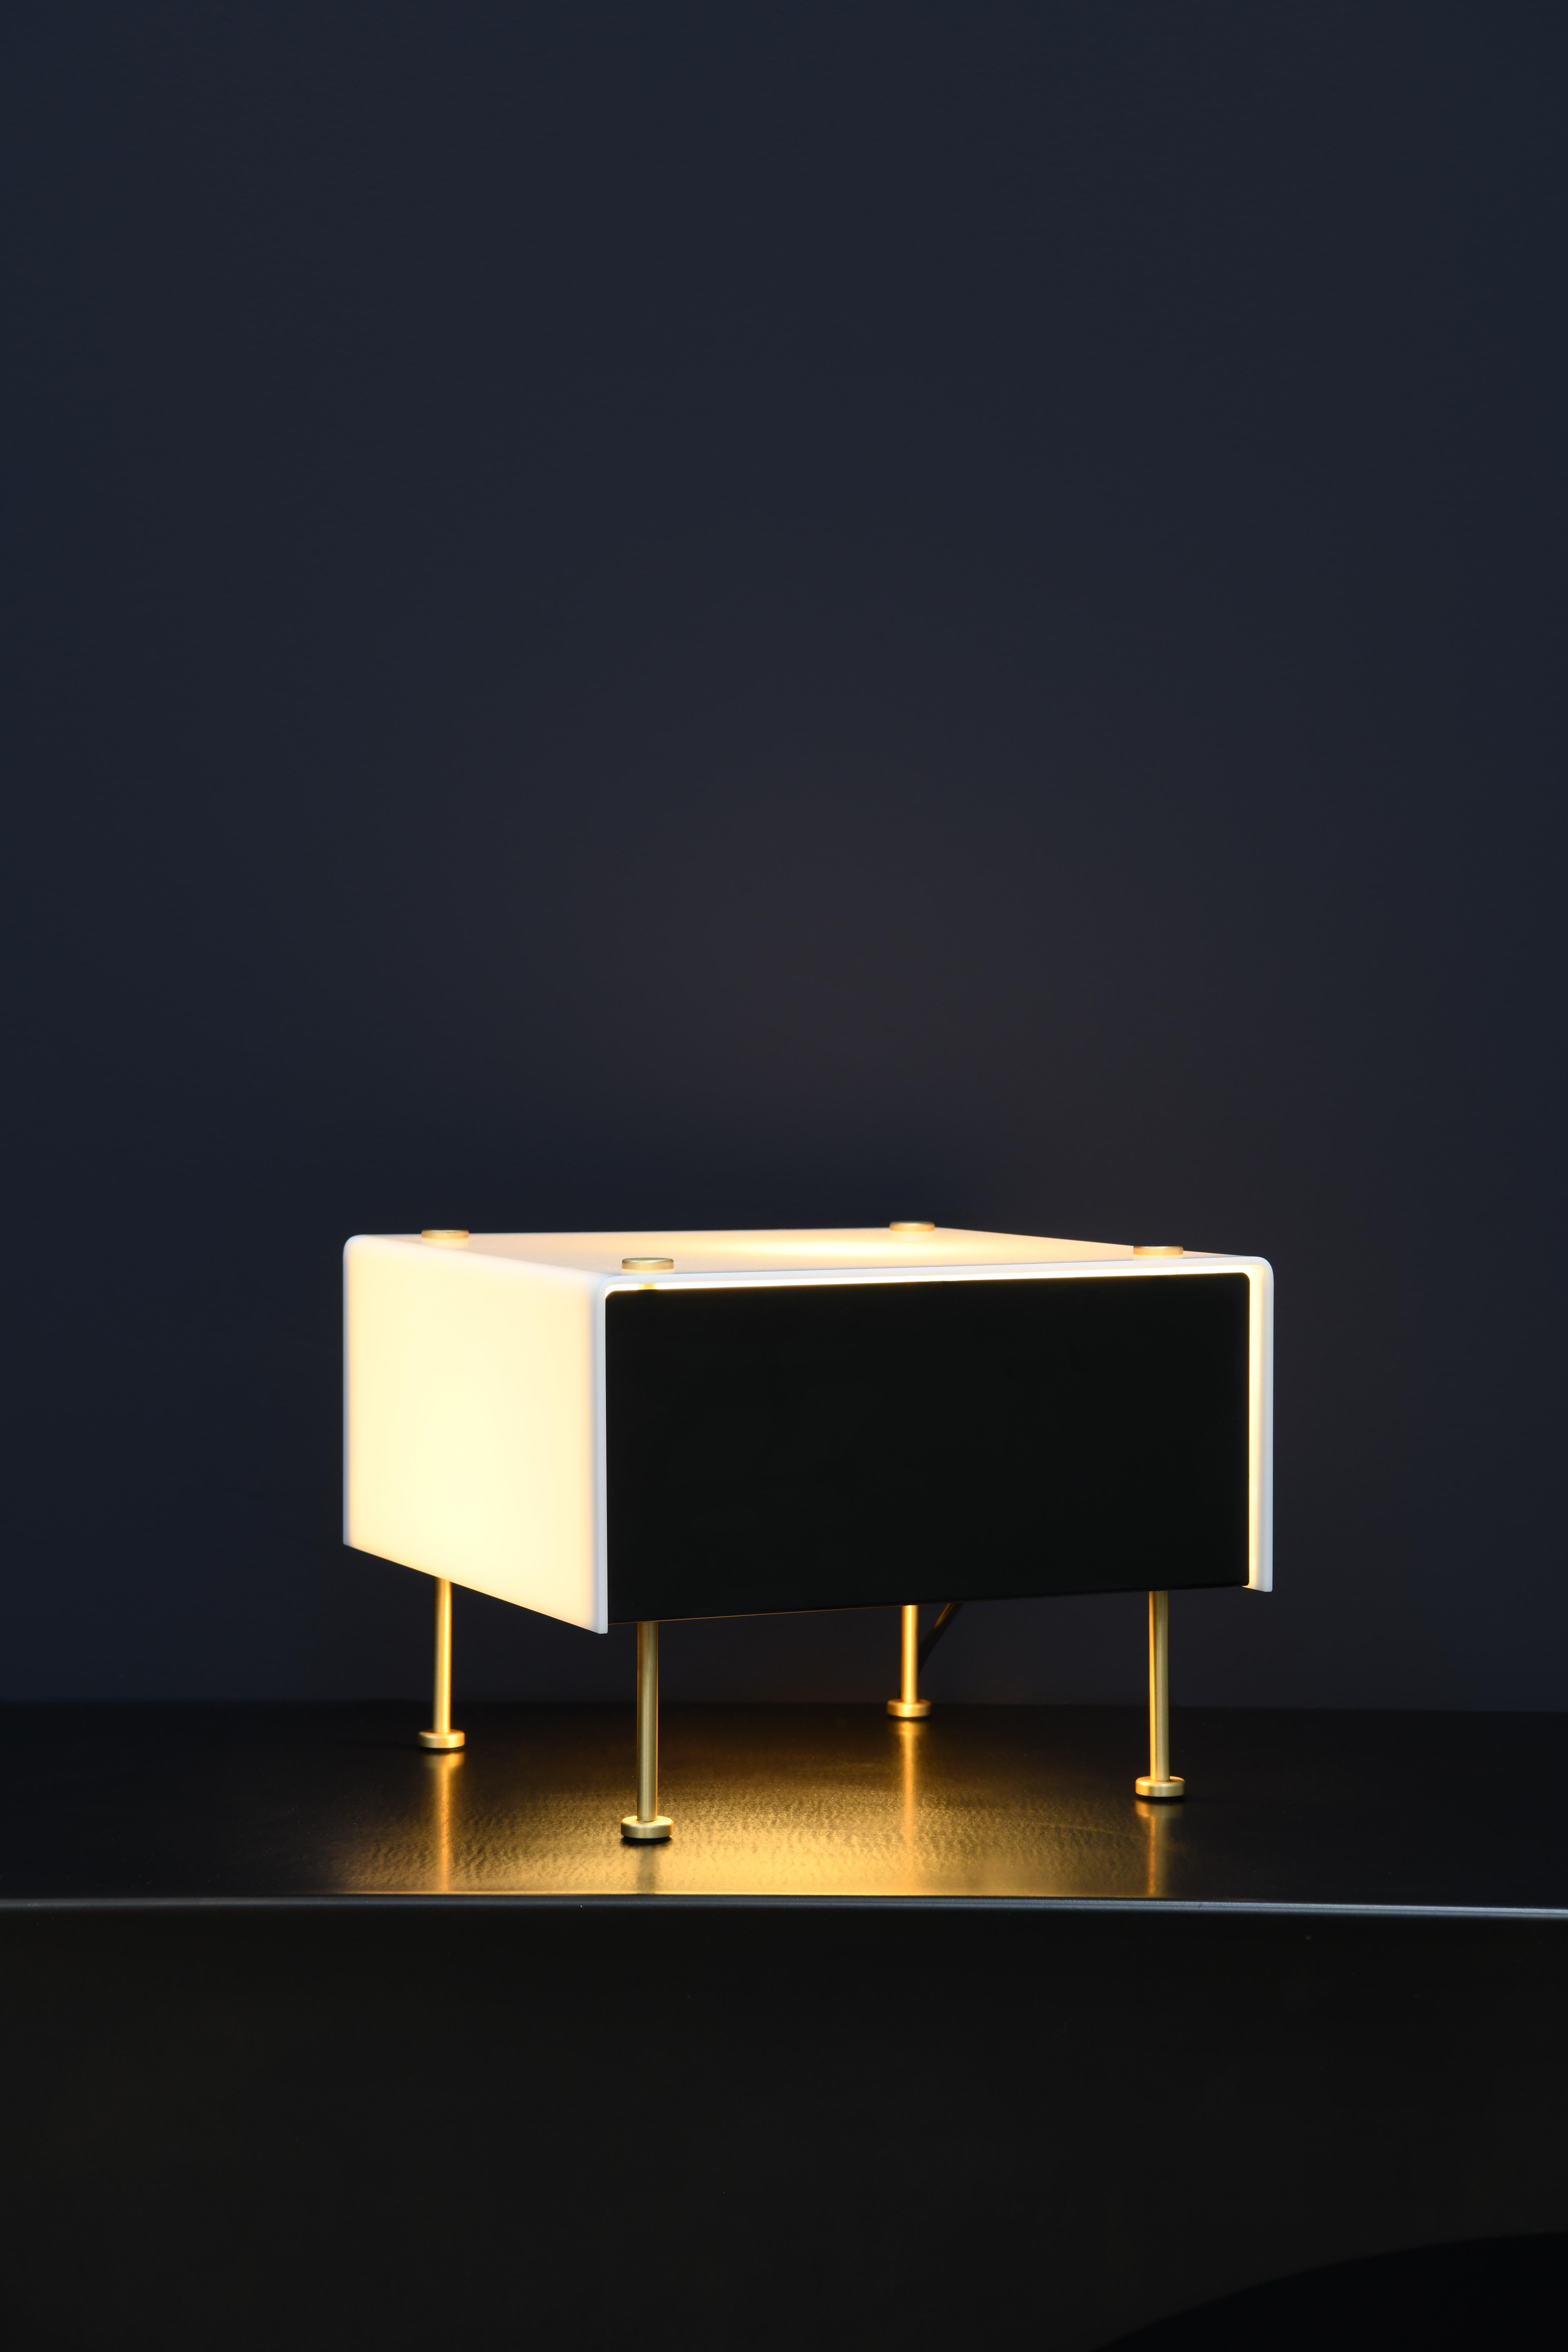 Pierre Guariche 'G60' Tischleuchte für Sammode Studio. 

Diese ikonische Leuchte wurde ursprünglich von Pierre Guariche entworfen und ist eine autorisierte Neuauflage des Sammode Studios in Frankreich, die viele der gleichen kleinen